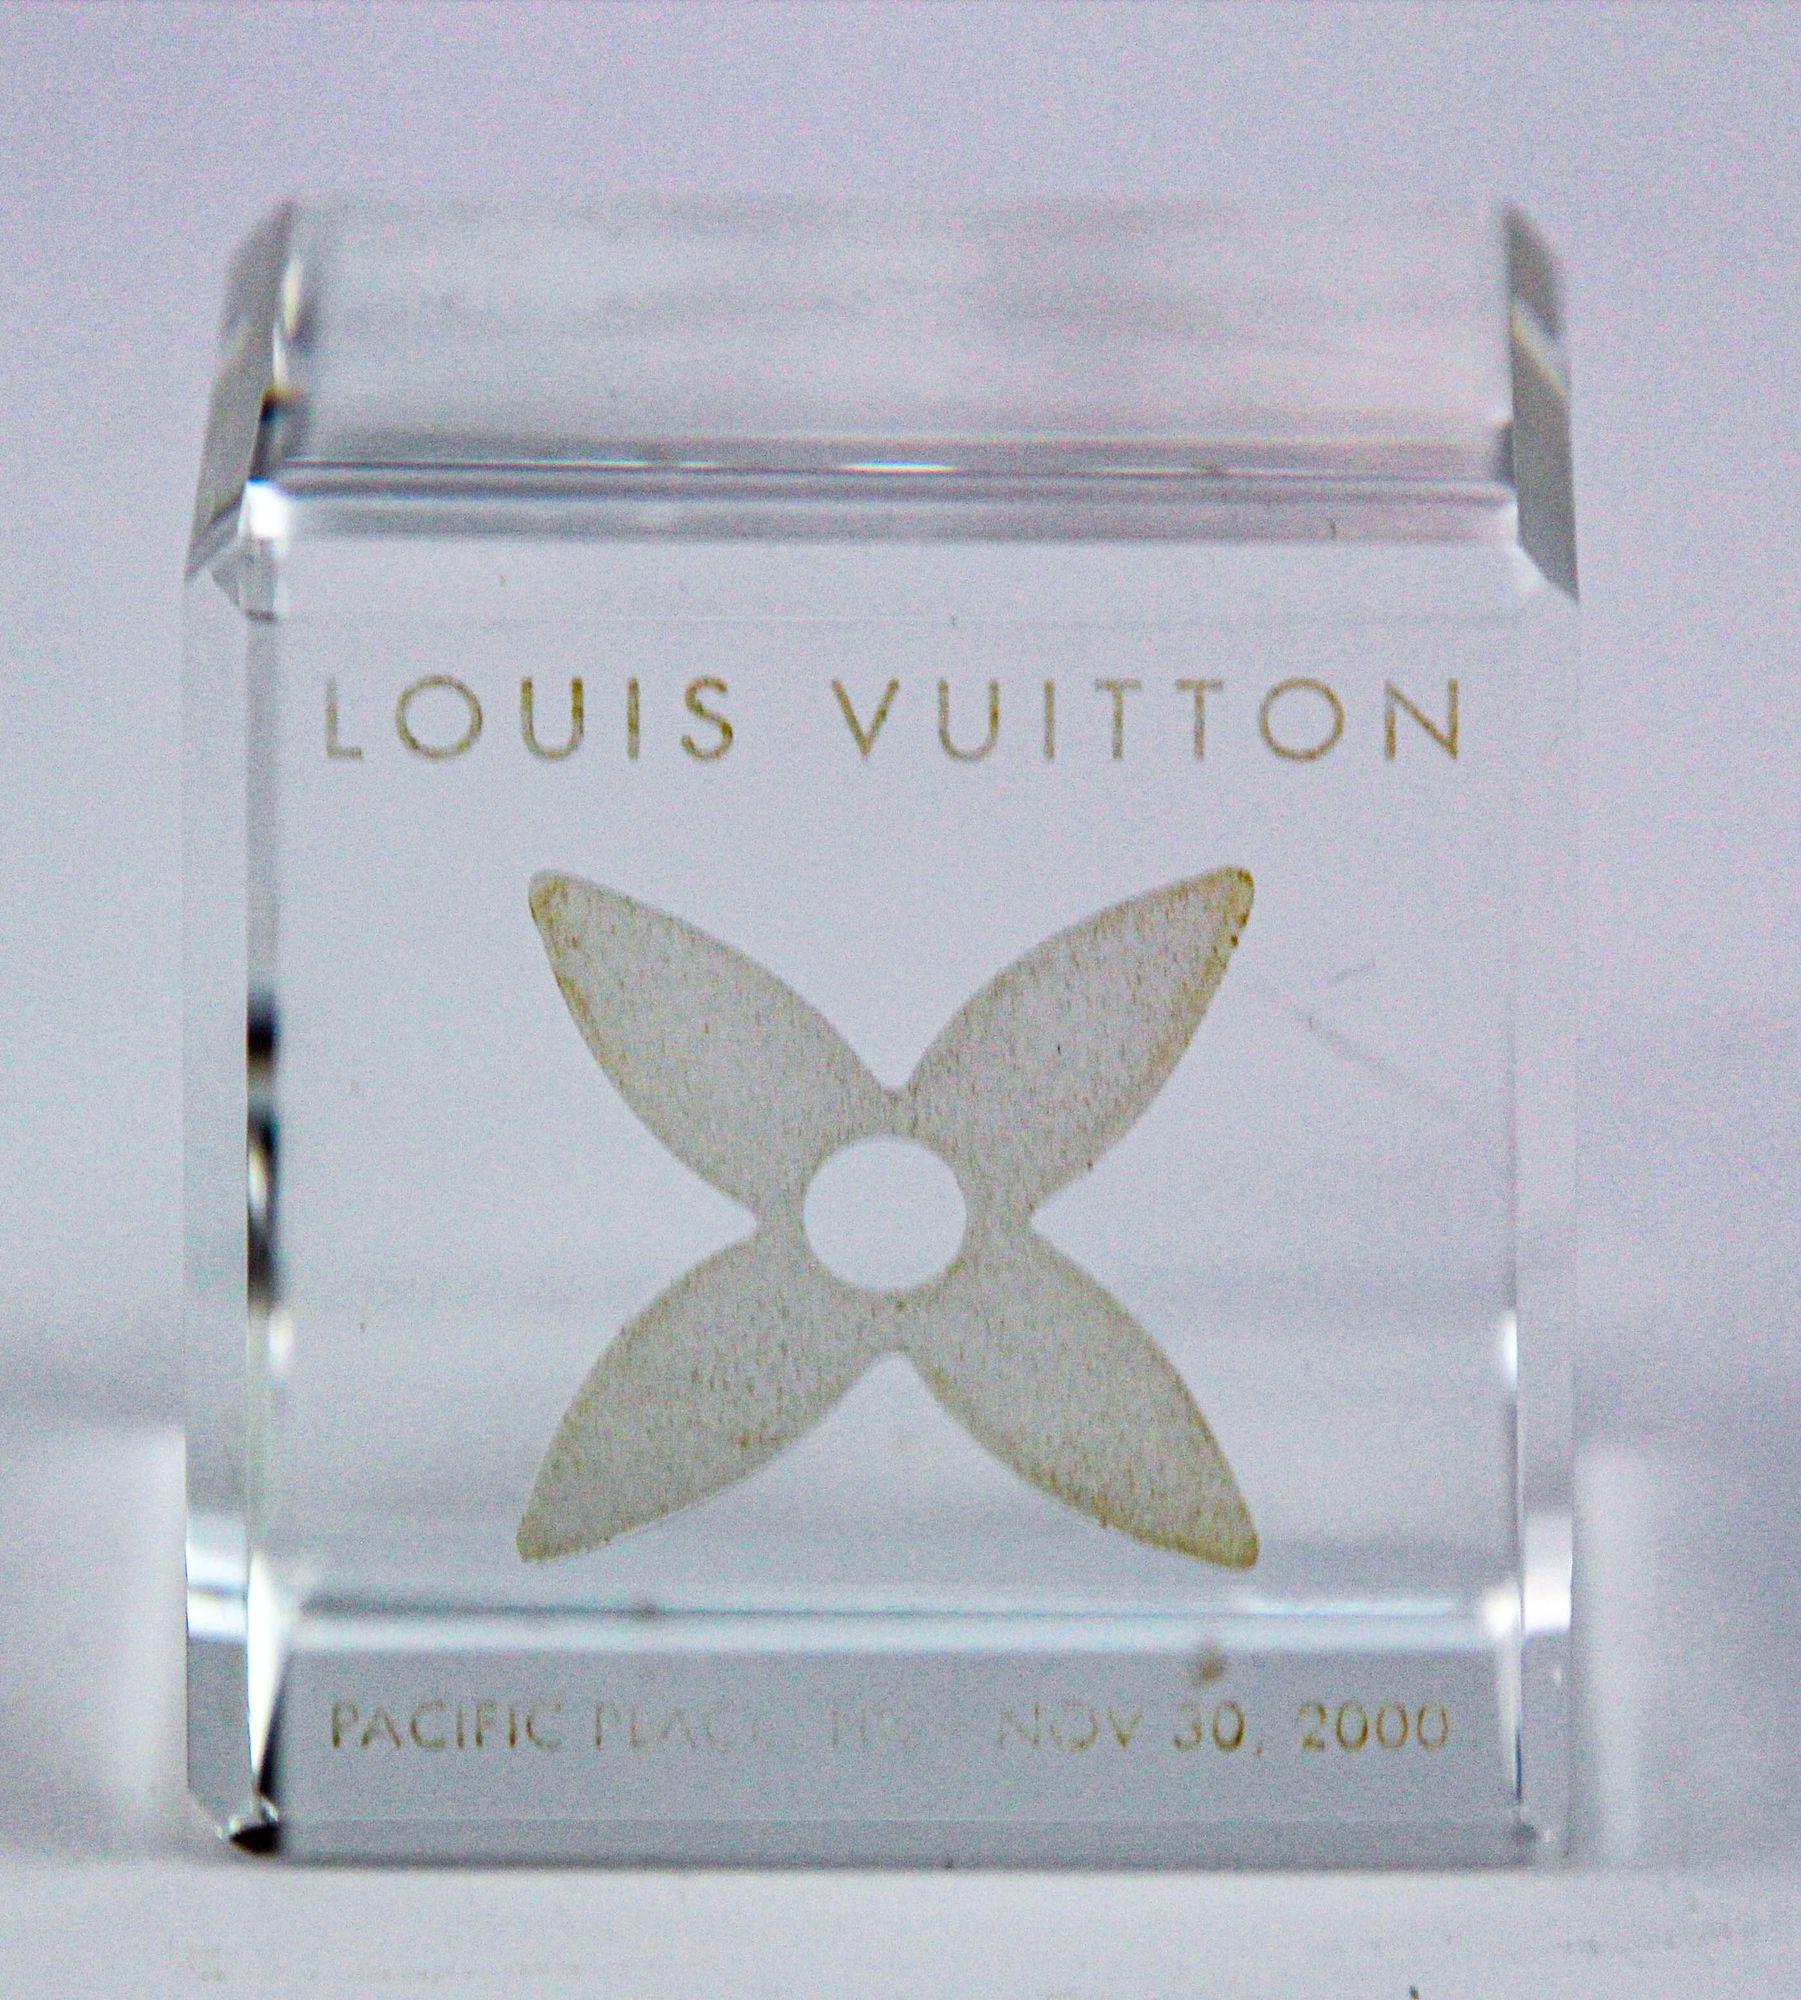 Ce Cube LOUIS VUITTON est composé de cristal.
Les visages représentent le monogramme de la marque.
Pièce de collection qui peut également servir de presse-papier sur votre bureau.
Cadeau VIP de Louis Vuitton Hong Kong datant de 2000.
Ce